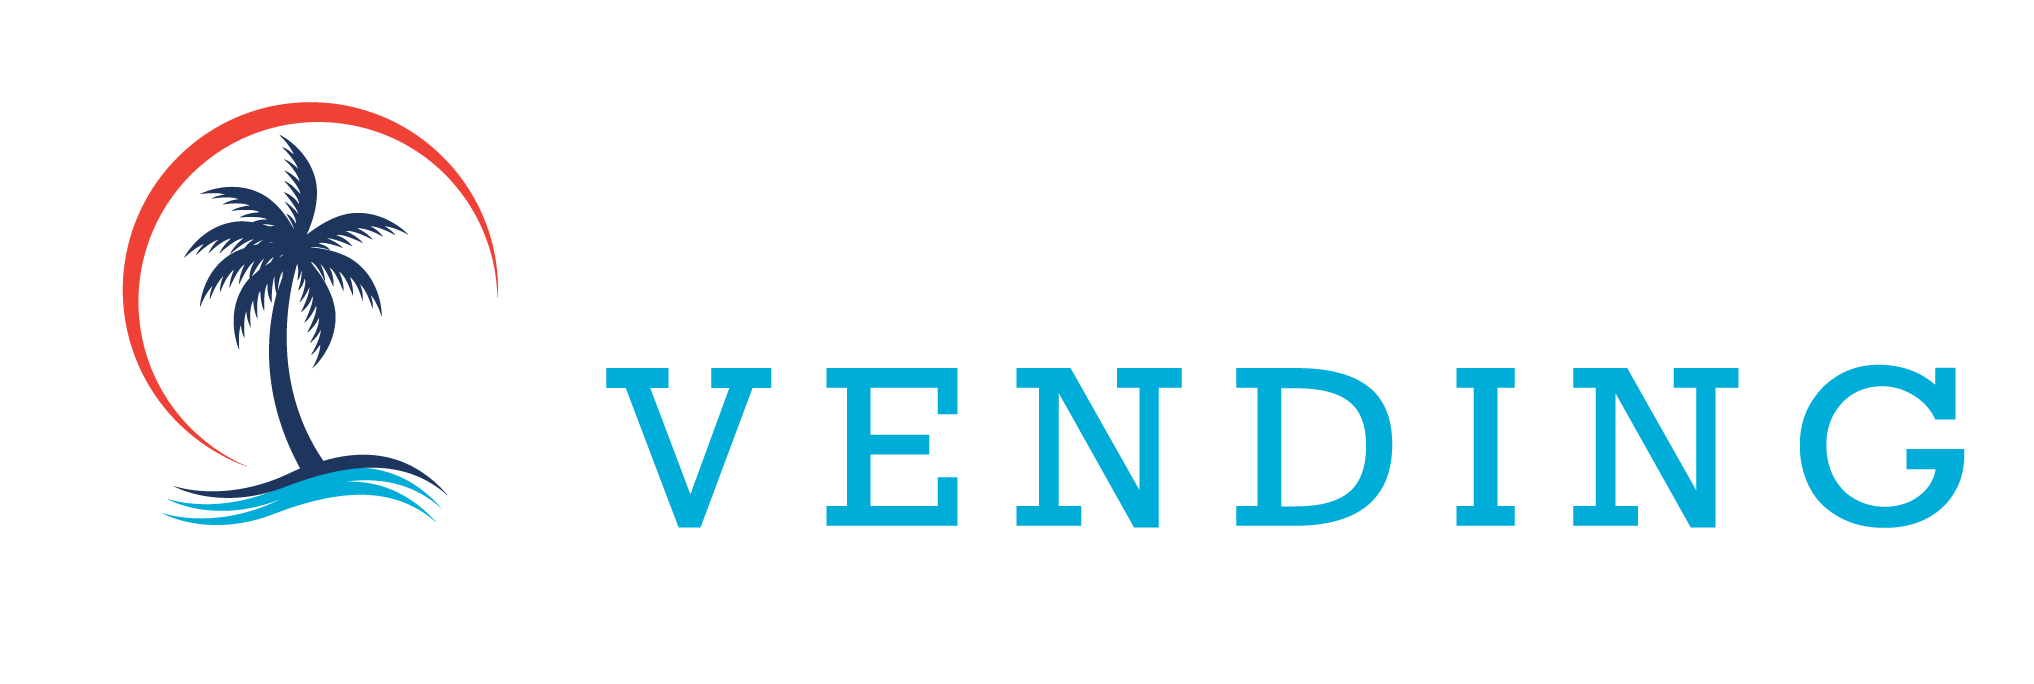 Stillwater Vending